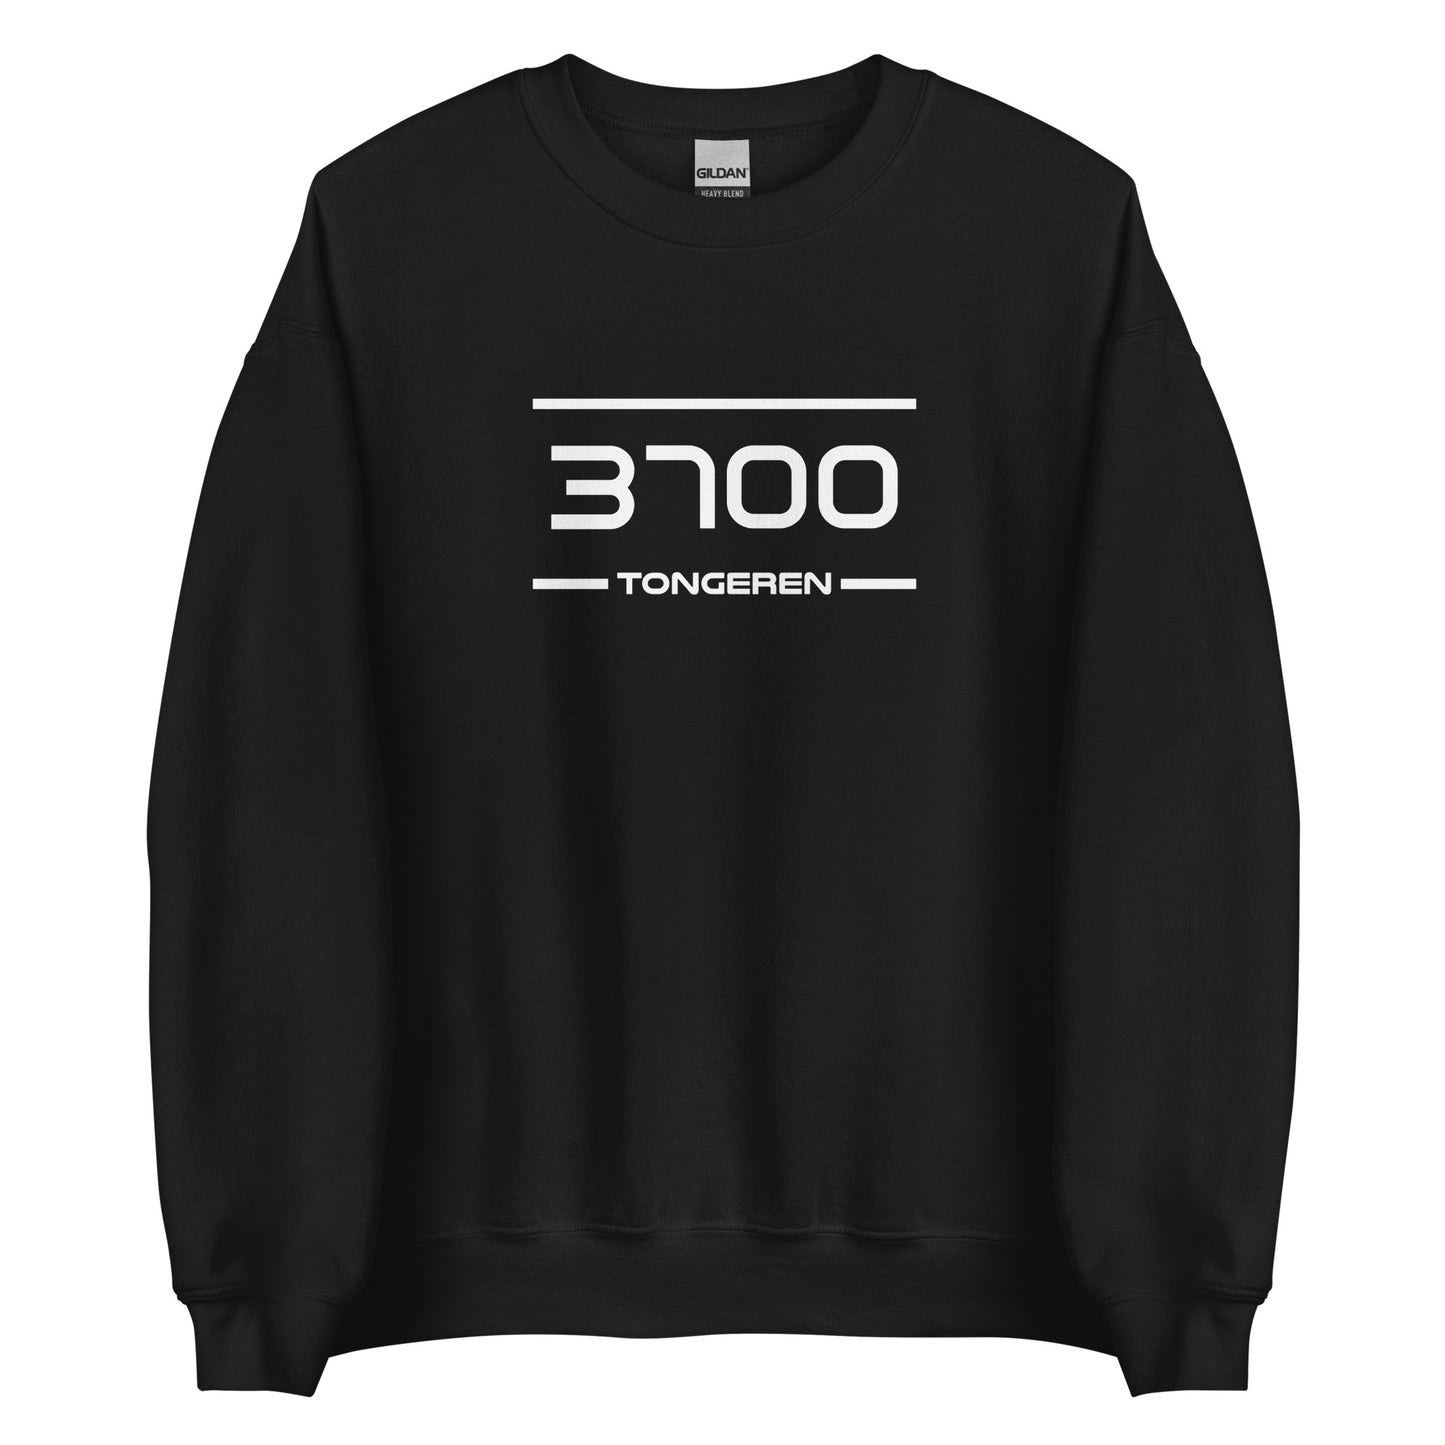 Sweater - 3700 - Tongeren (M/V)